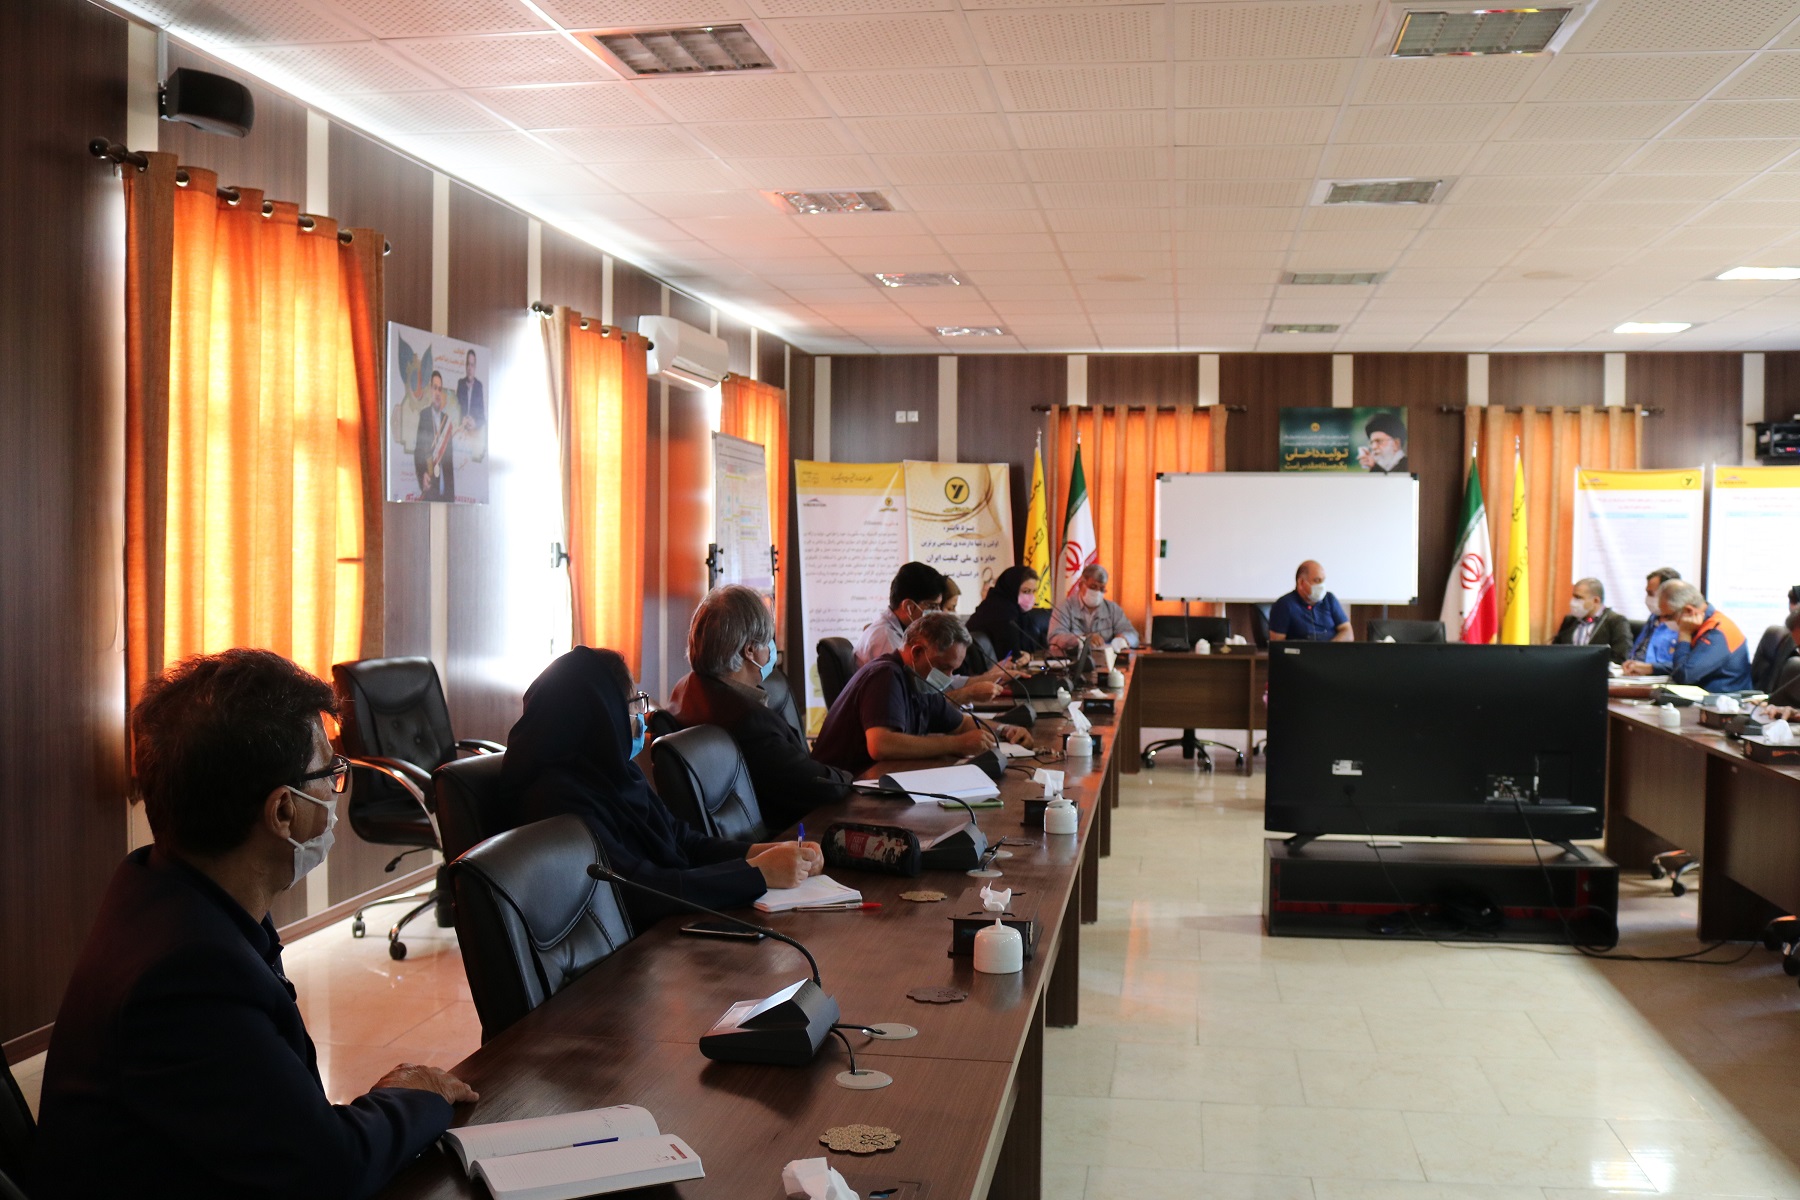 جلسه شروع به کار پروژه جاری سازی نظام "مدیریت نوآوری فن آورانه" برگزار گردید. 